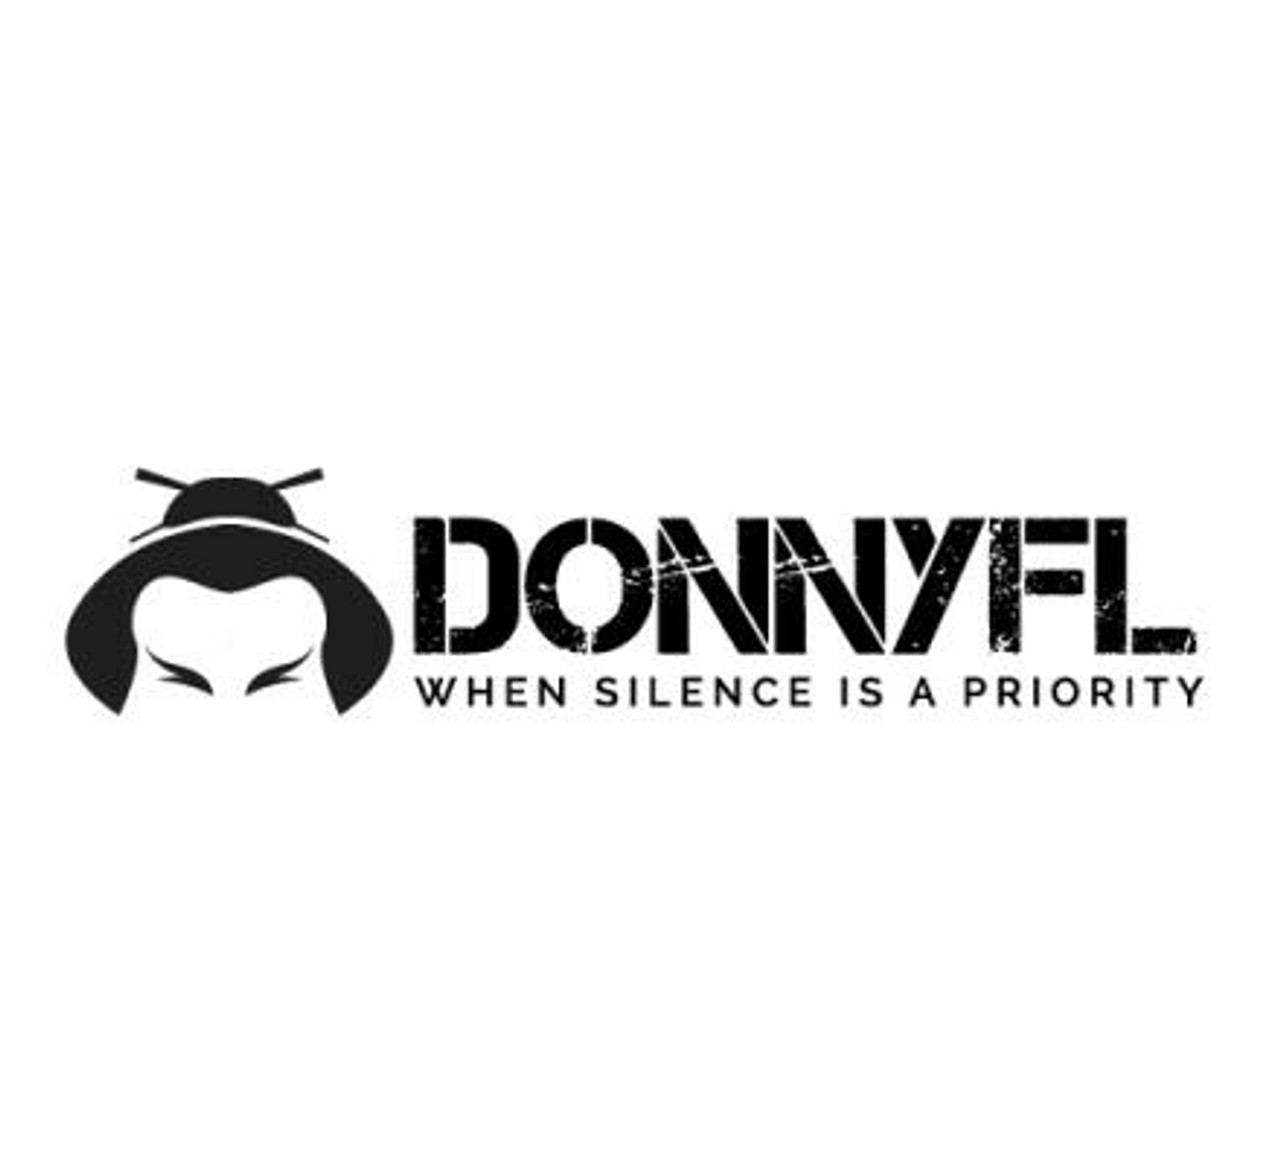 DonnyFL Tanto Size 25 Silencer - .22 Calibre 1/2x20UNF